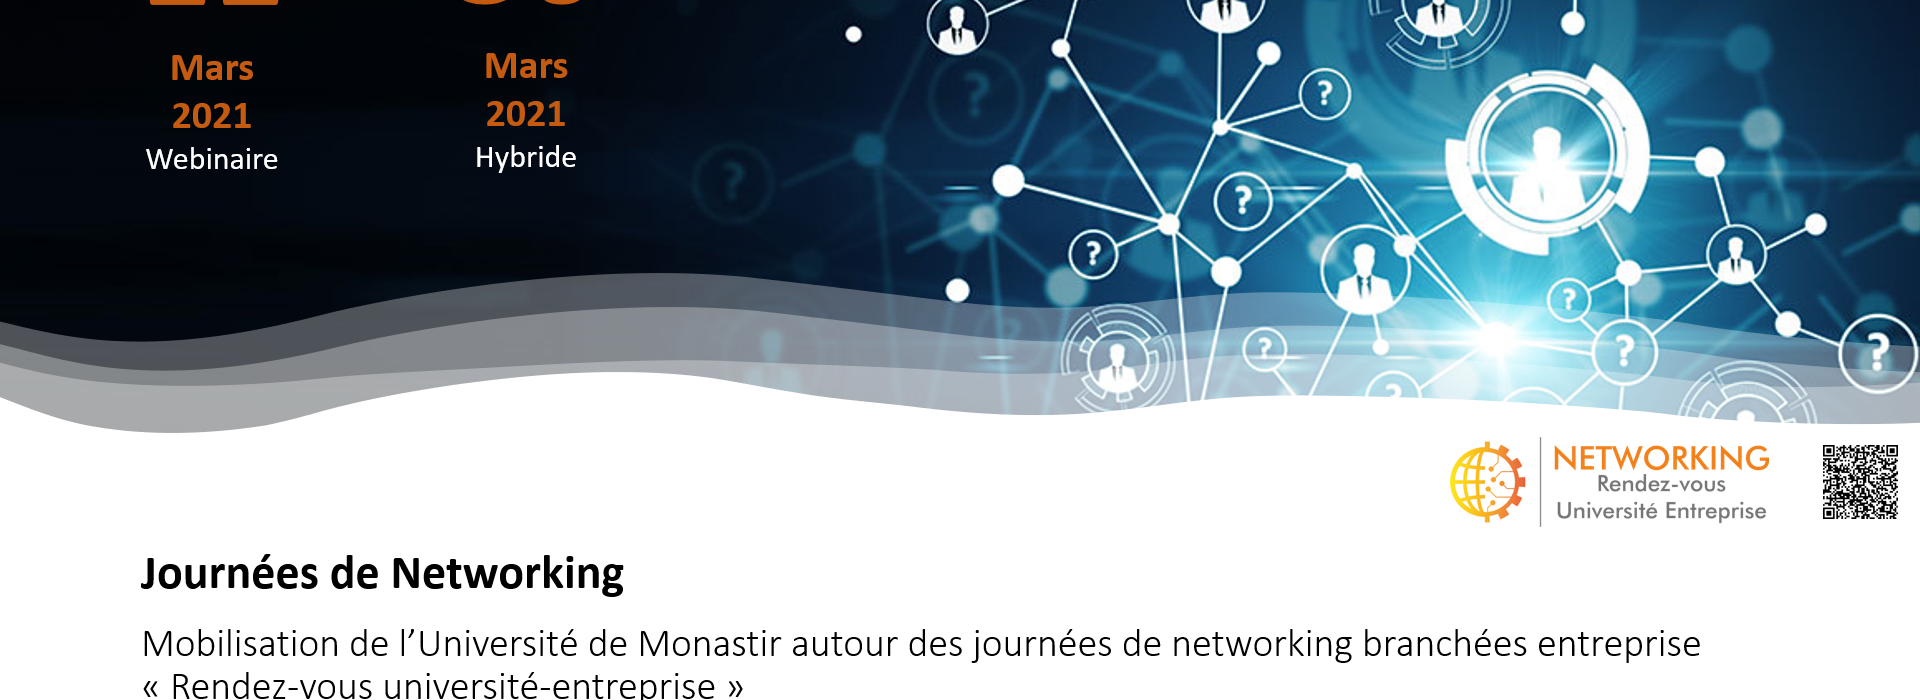 Mobilisation de l’Université de Monastir autour des journées de networking branchées entreprises 